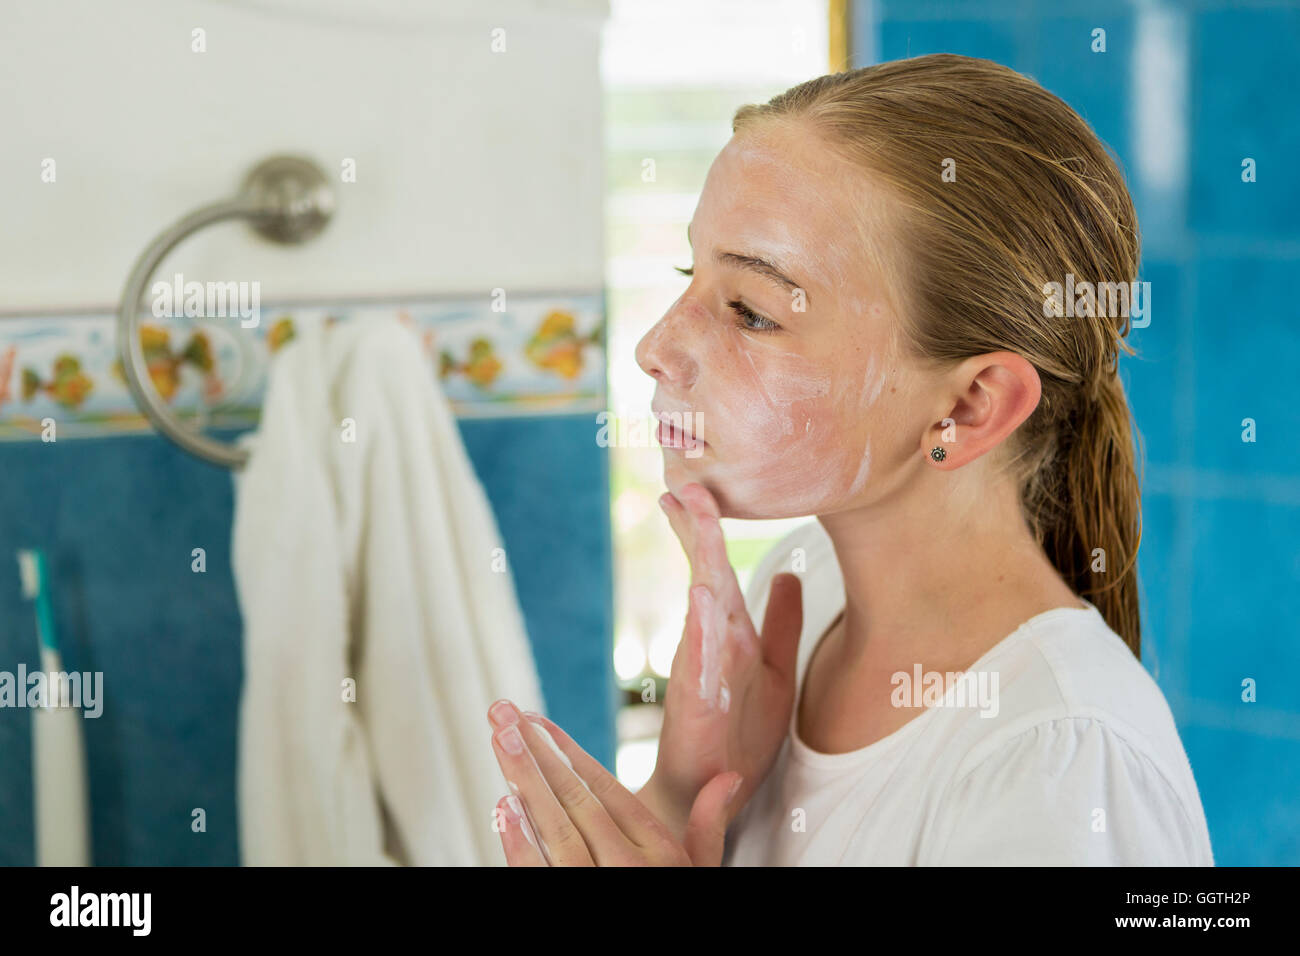 Kaukasische Mädchen Gesicht mit Seife waschen Stockfotografie - Alamy